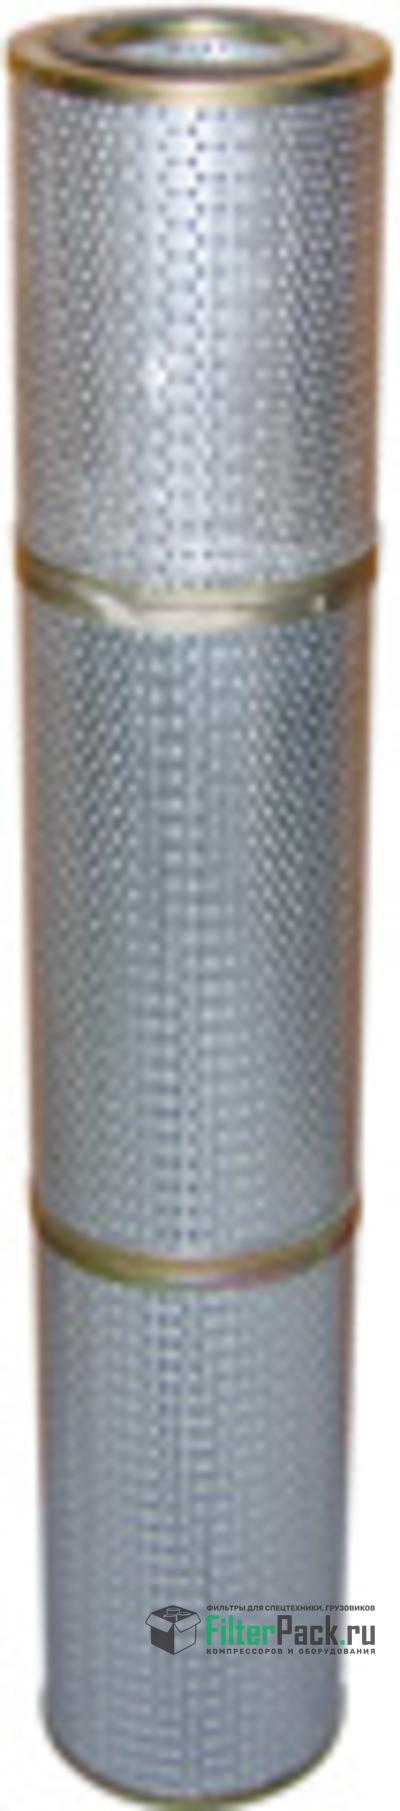 Baldwin PT9328-MPG гидравлический фильтр элемент